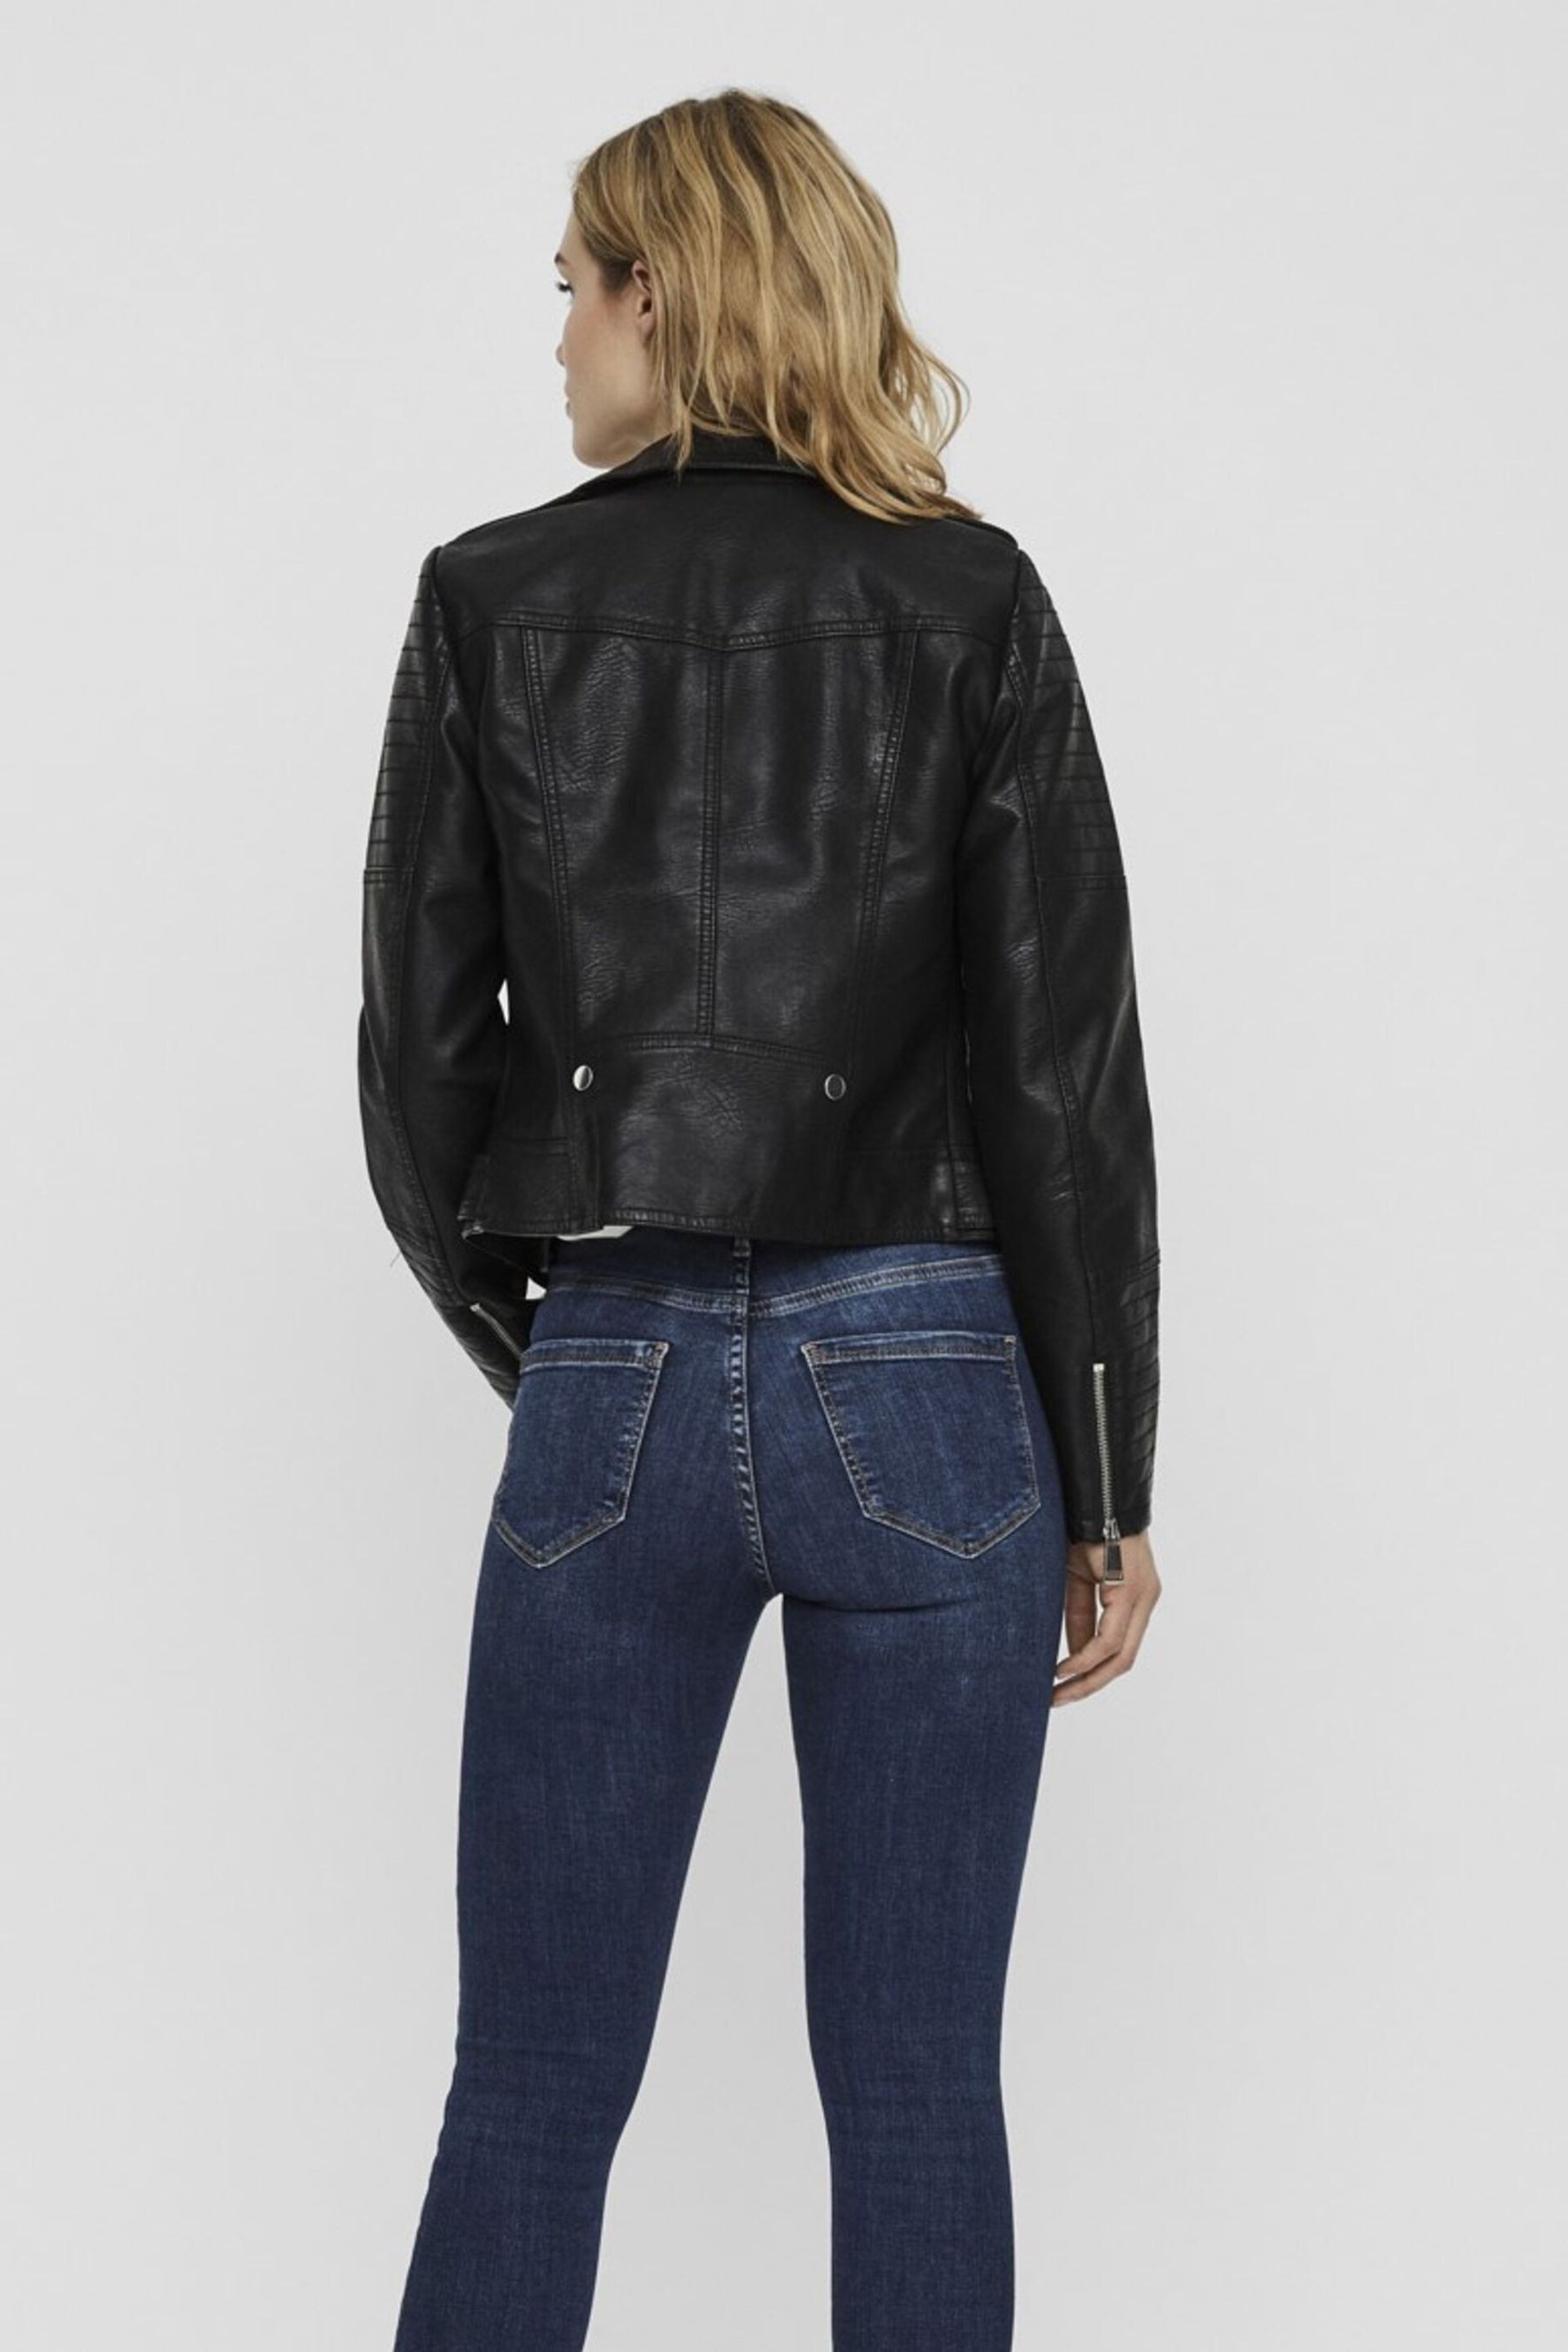 Vero Moda Black Faux Leather Jacket - Image 2 of 5